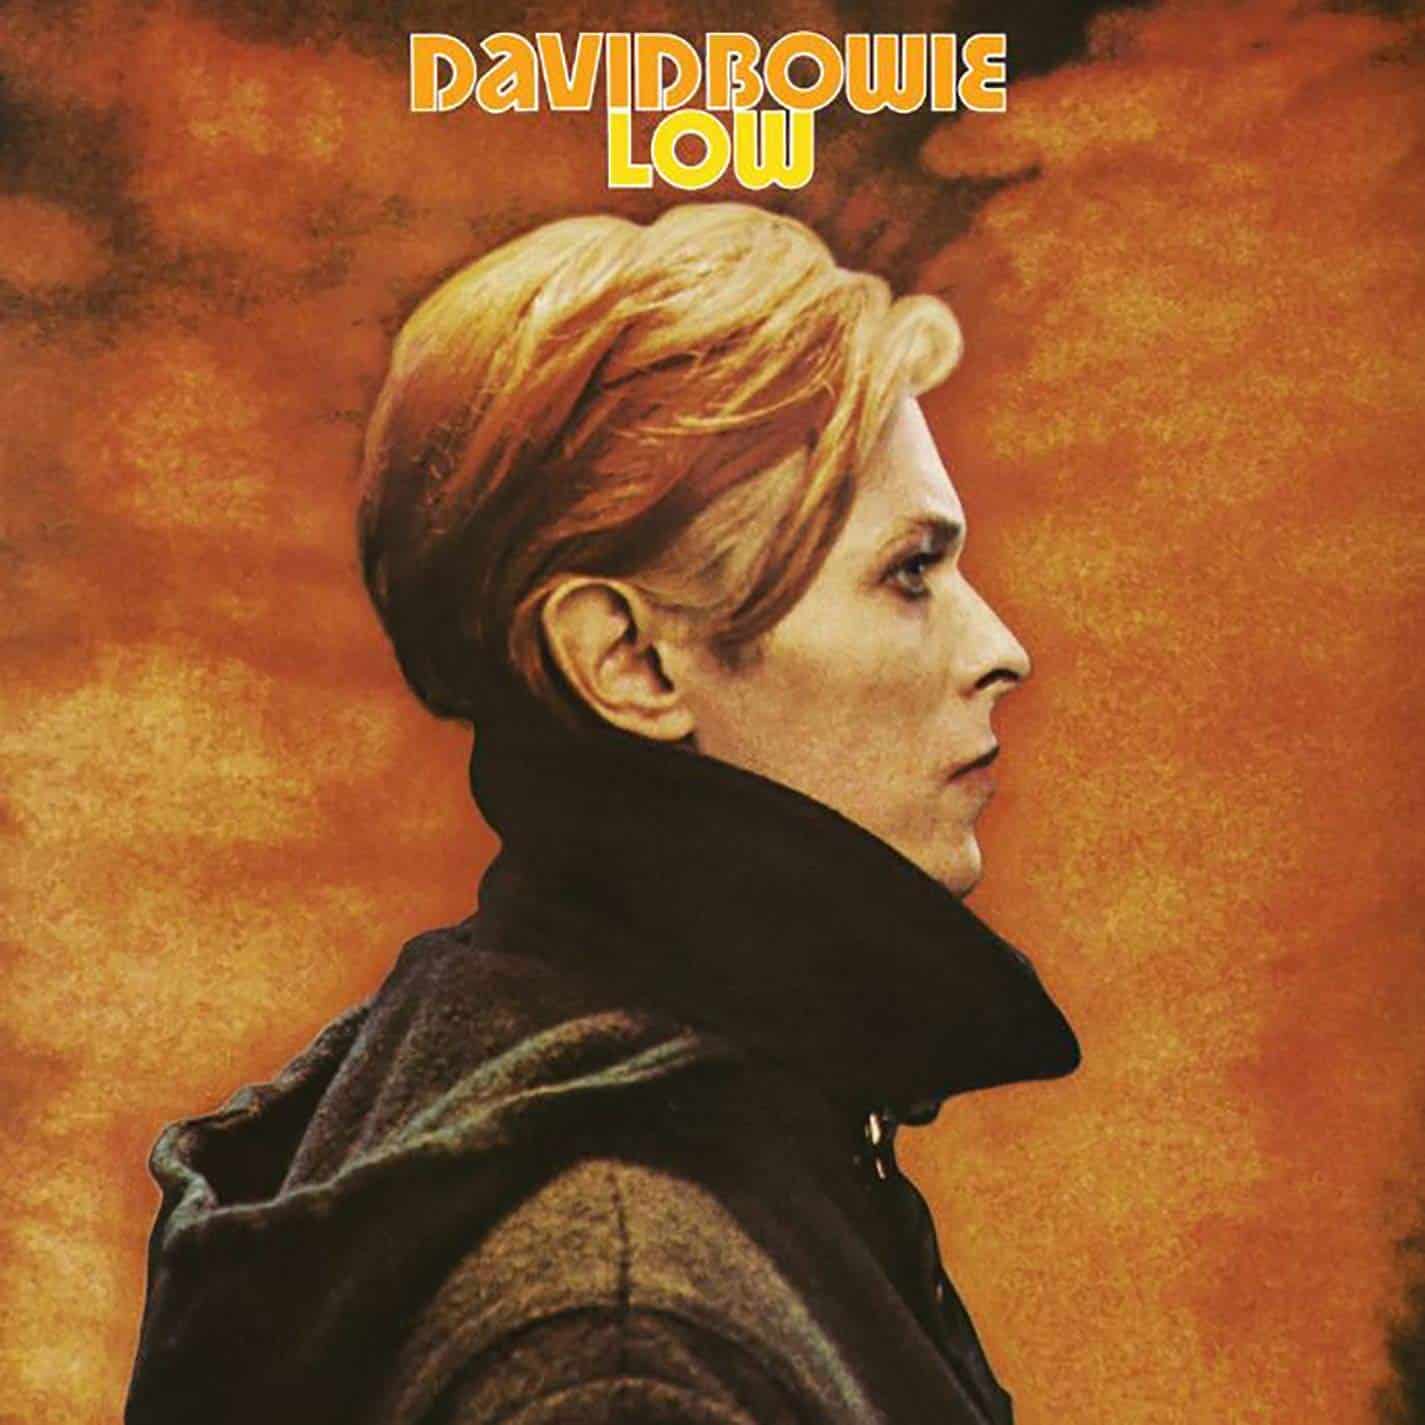 David-Bowie-Low-vinyl-record-album-front